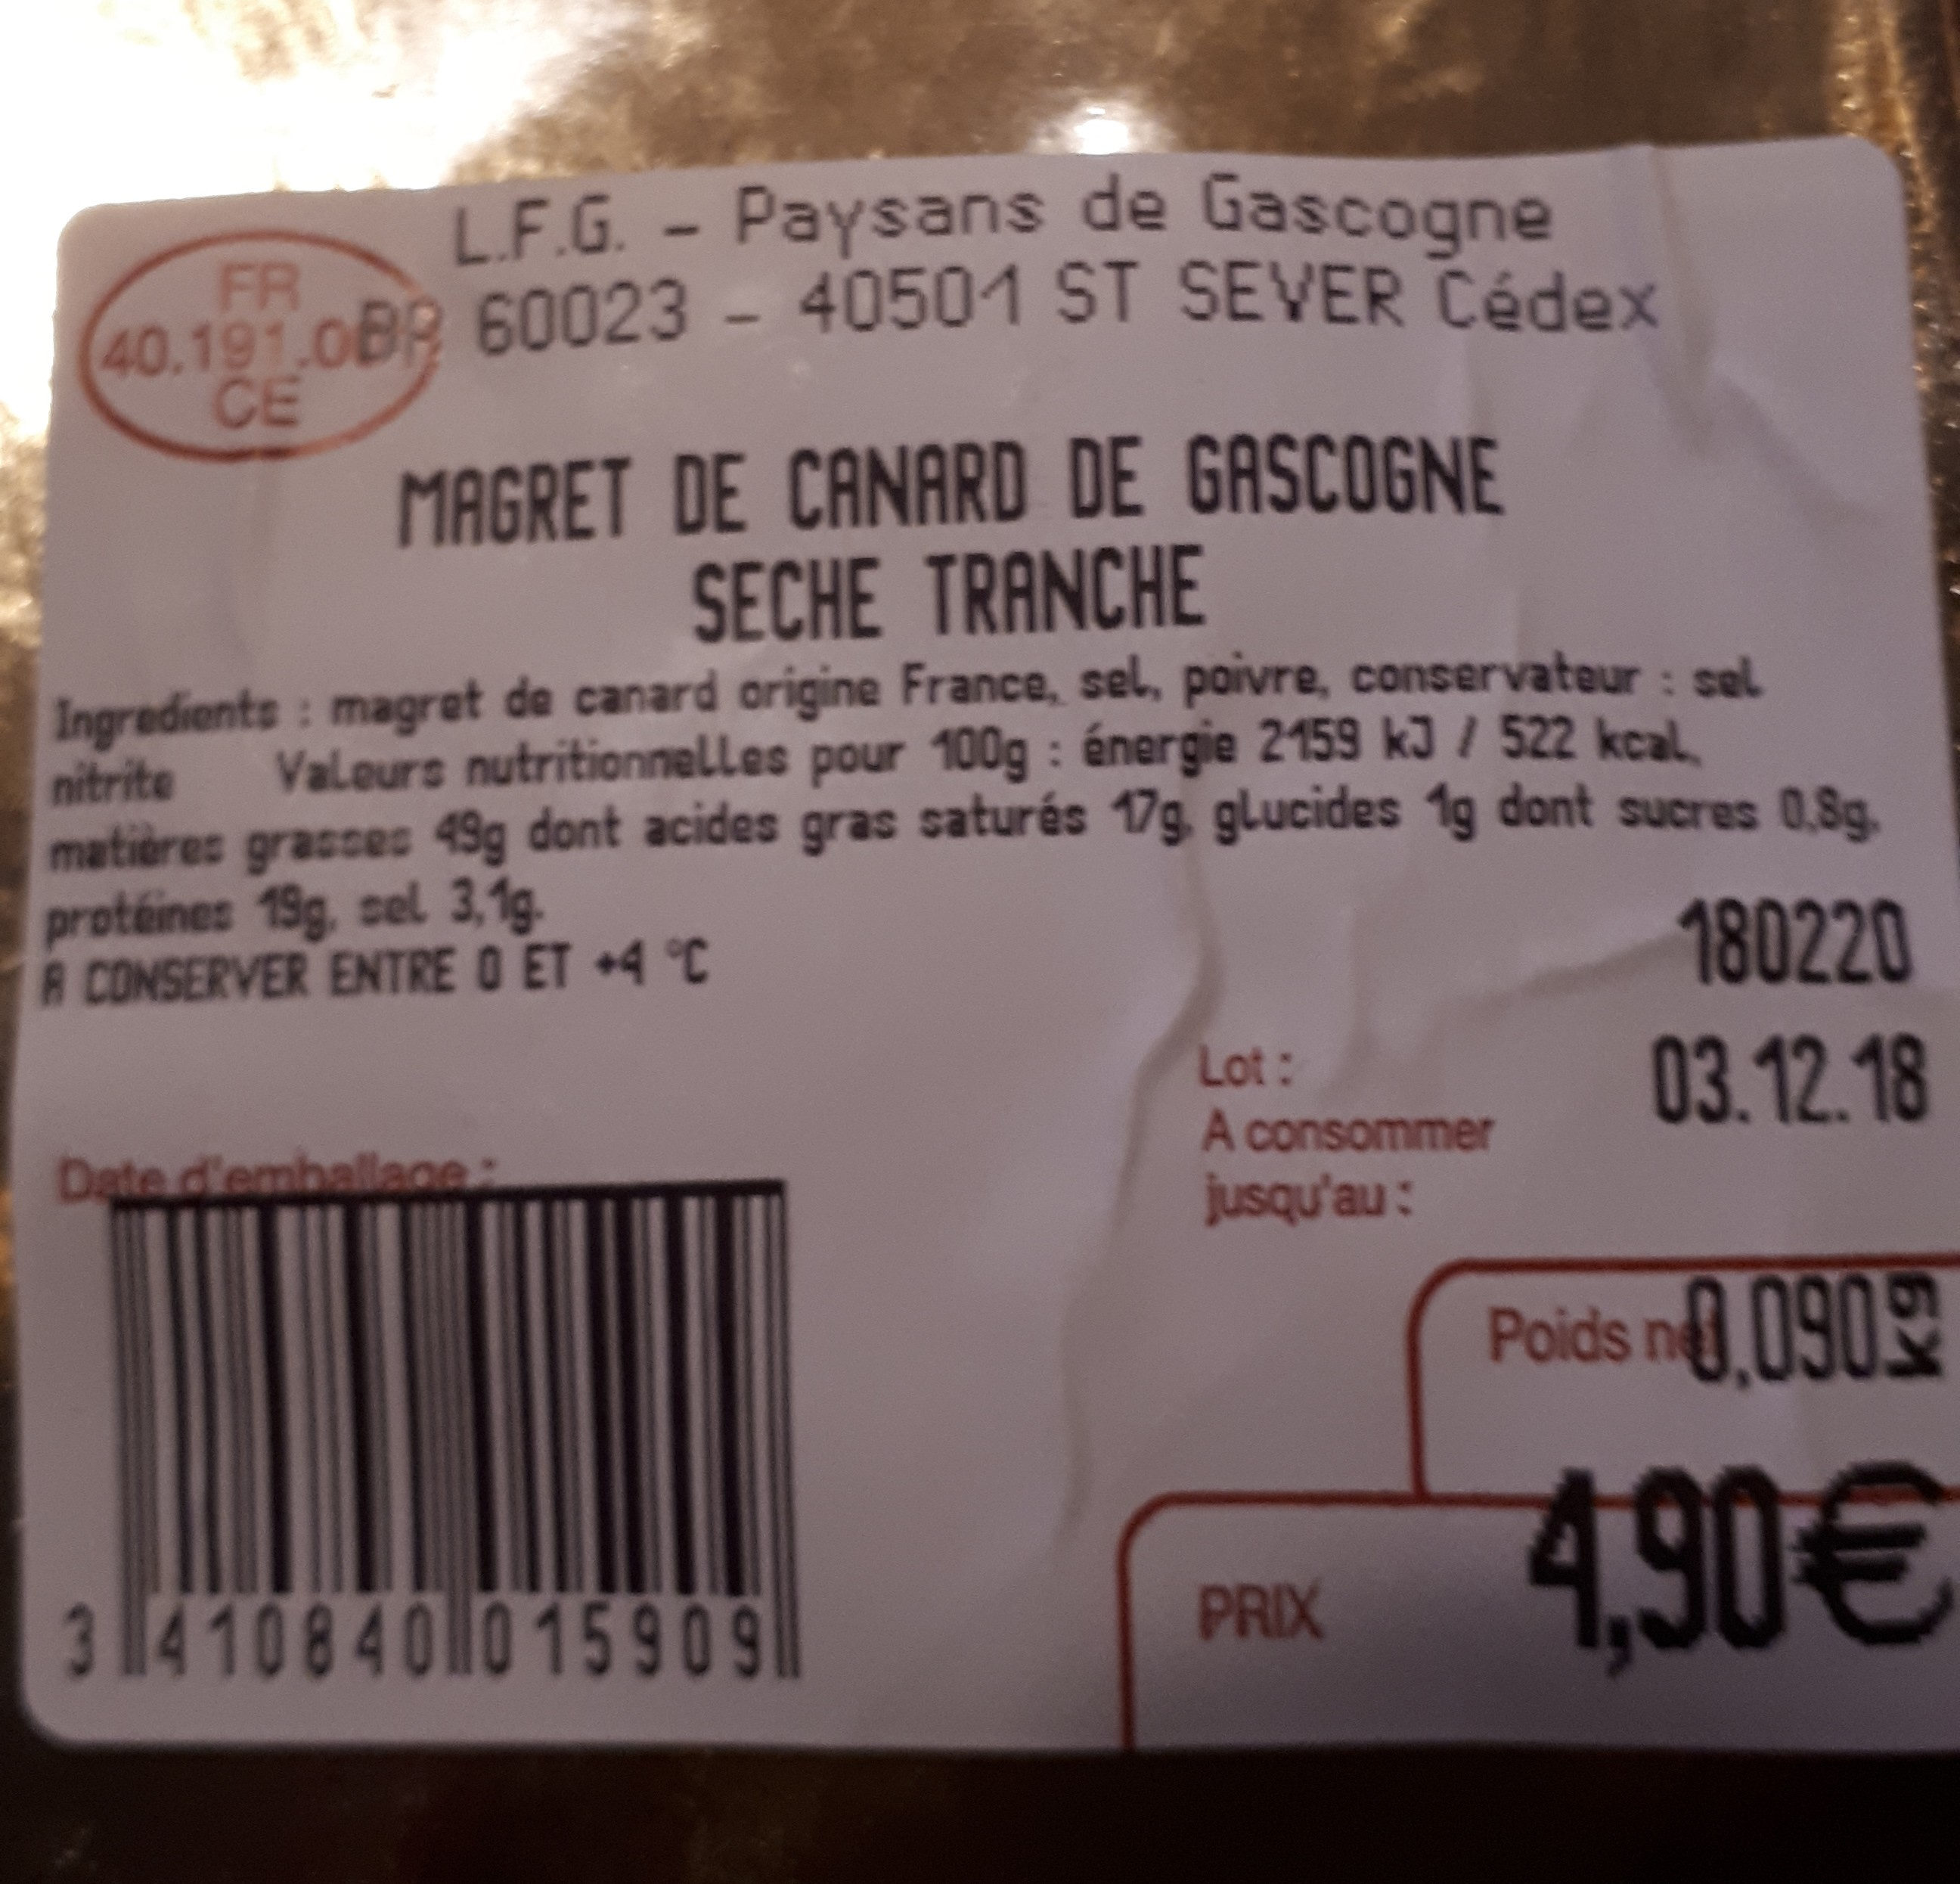 Magret de canard de gascogne seché tranché - Tableau nutritionnel